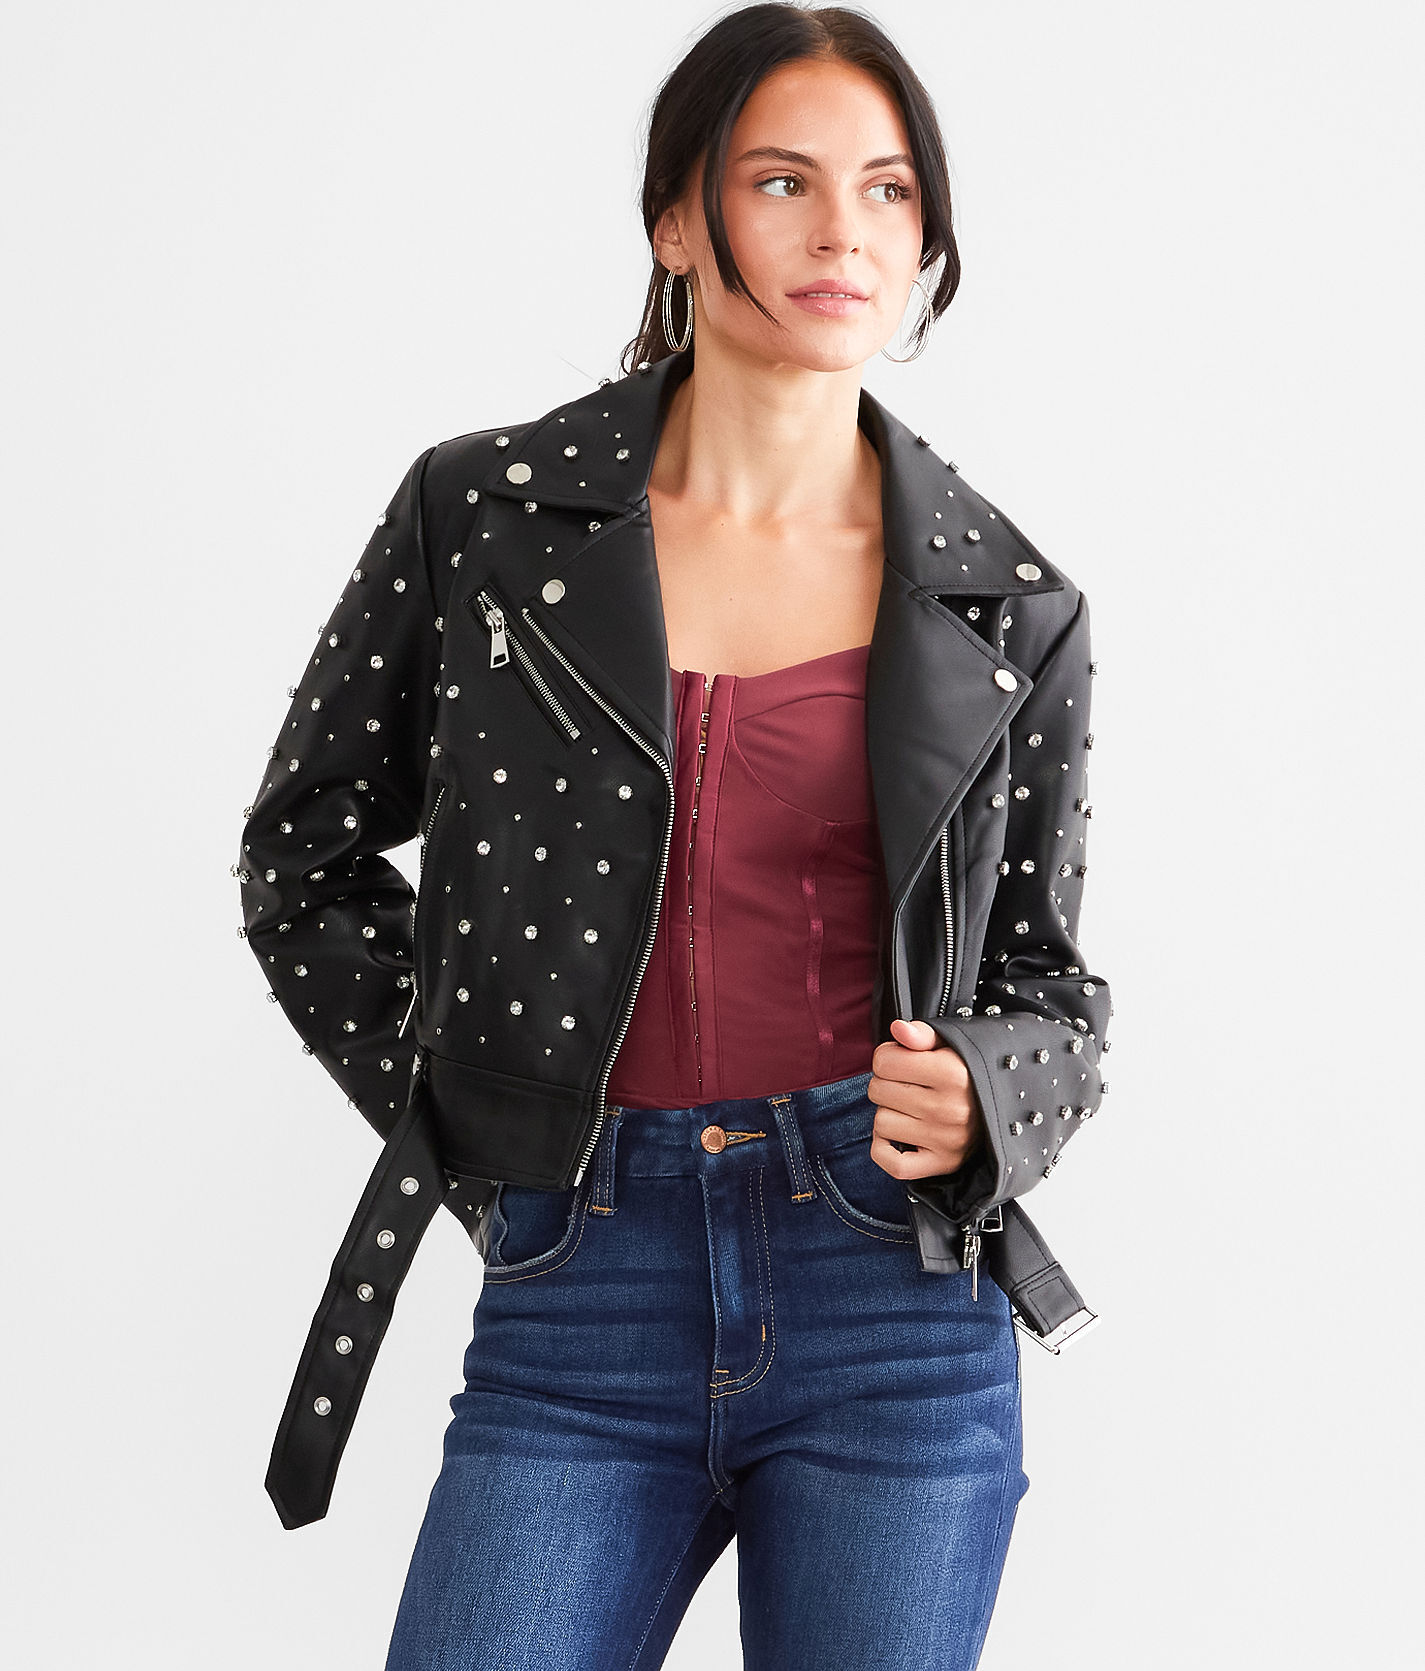 Azalea Wang Glitz Cropped Faux Leather Jacket  - Black - female - Size: Small